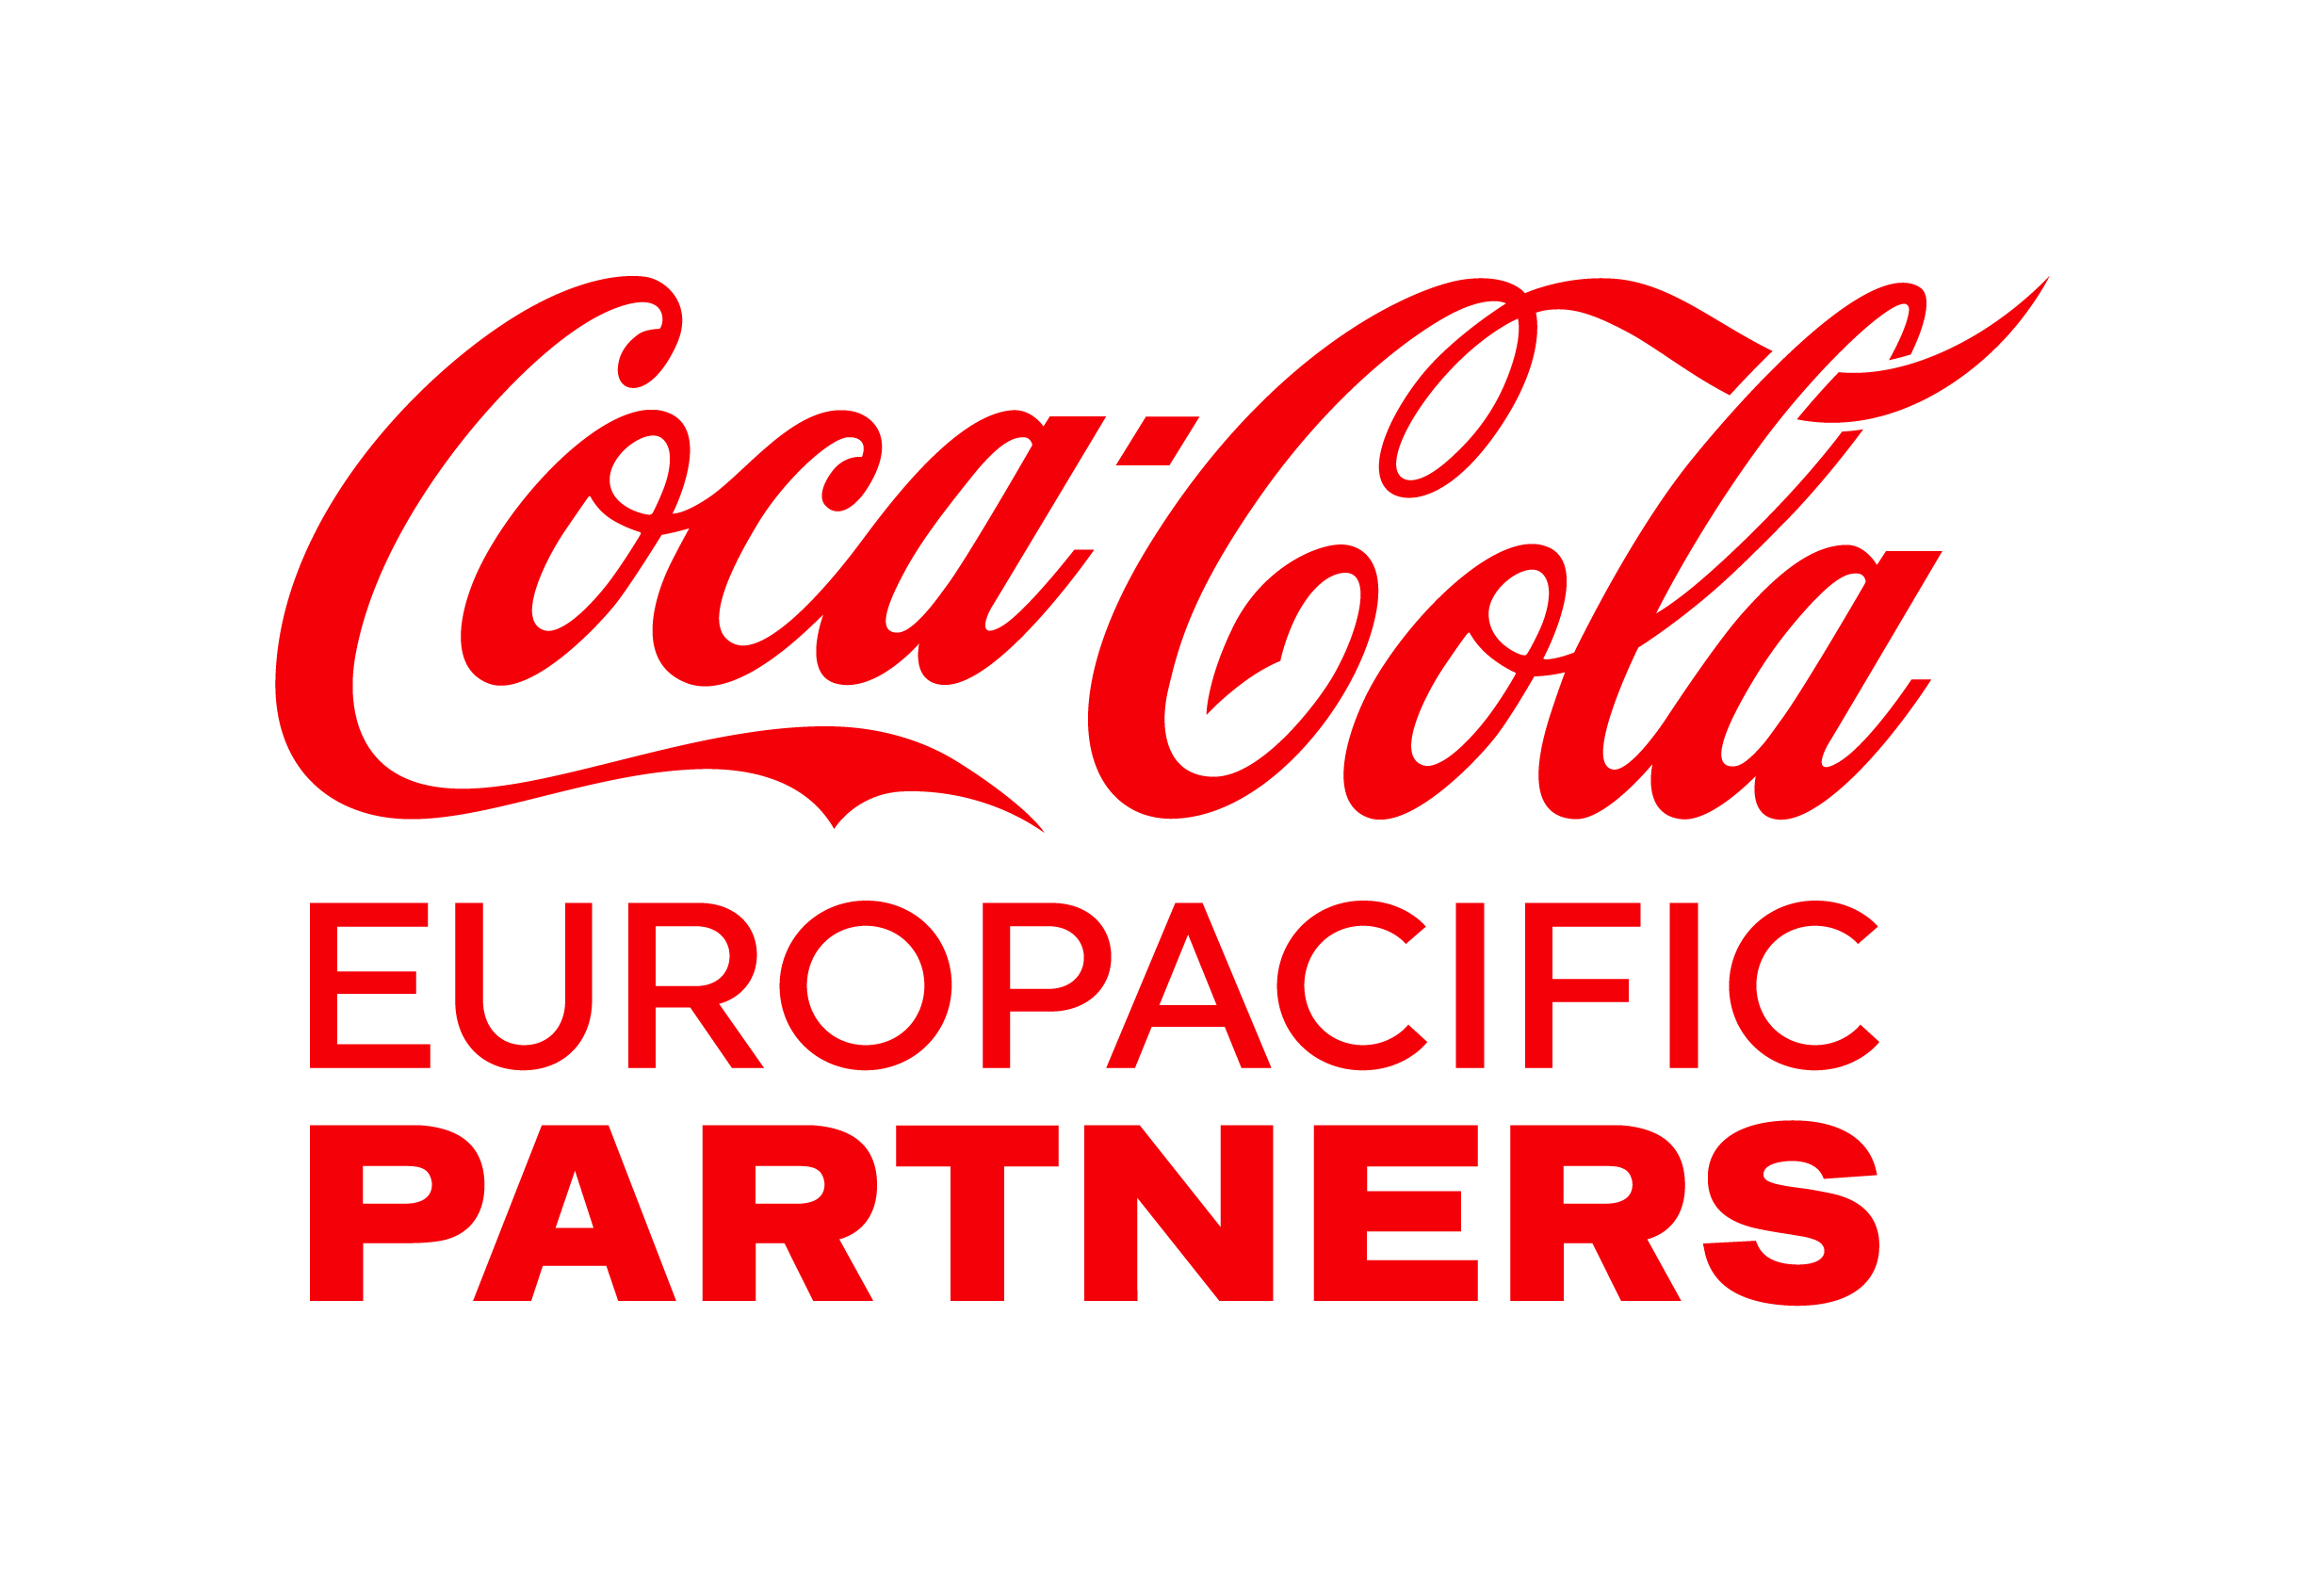 Coca Cola Euro Pacific Partners Ltd image.